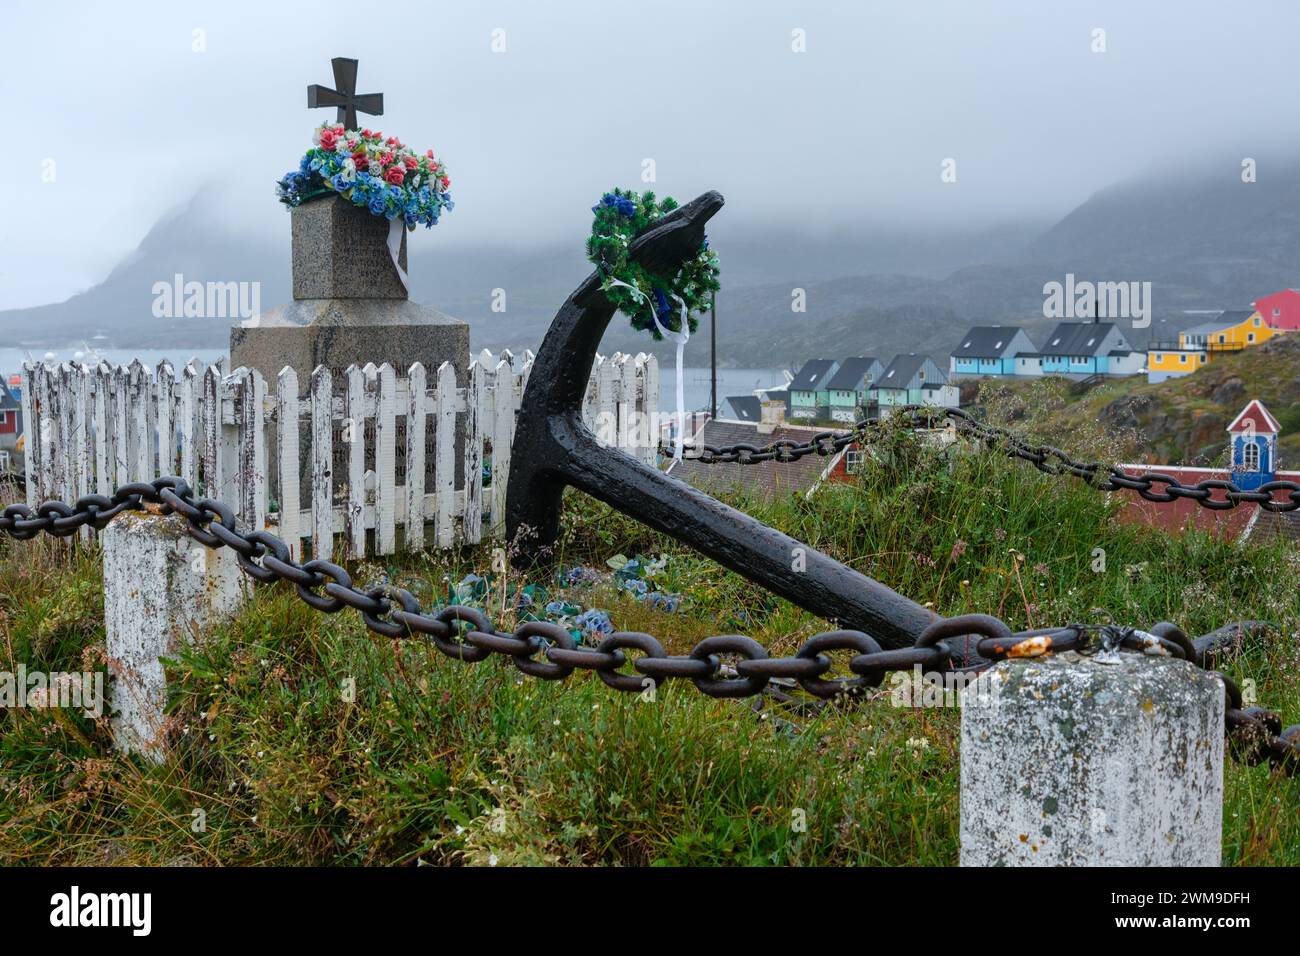 Un monument et une ancre de grand navire sont ornés de couronnes de fleurs. Sisimiut, Groenland. Banque D'Images